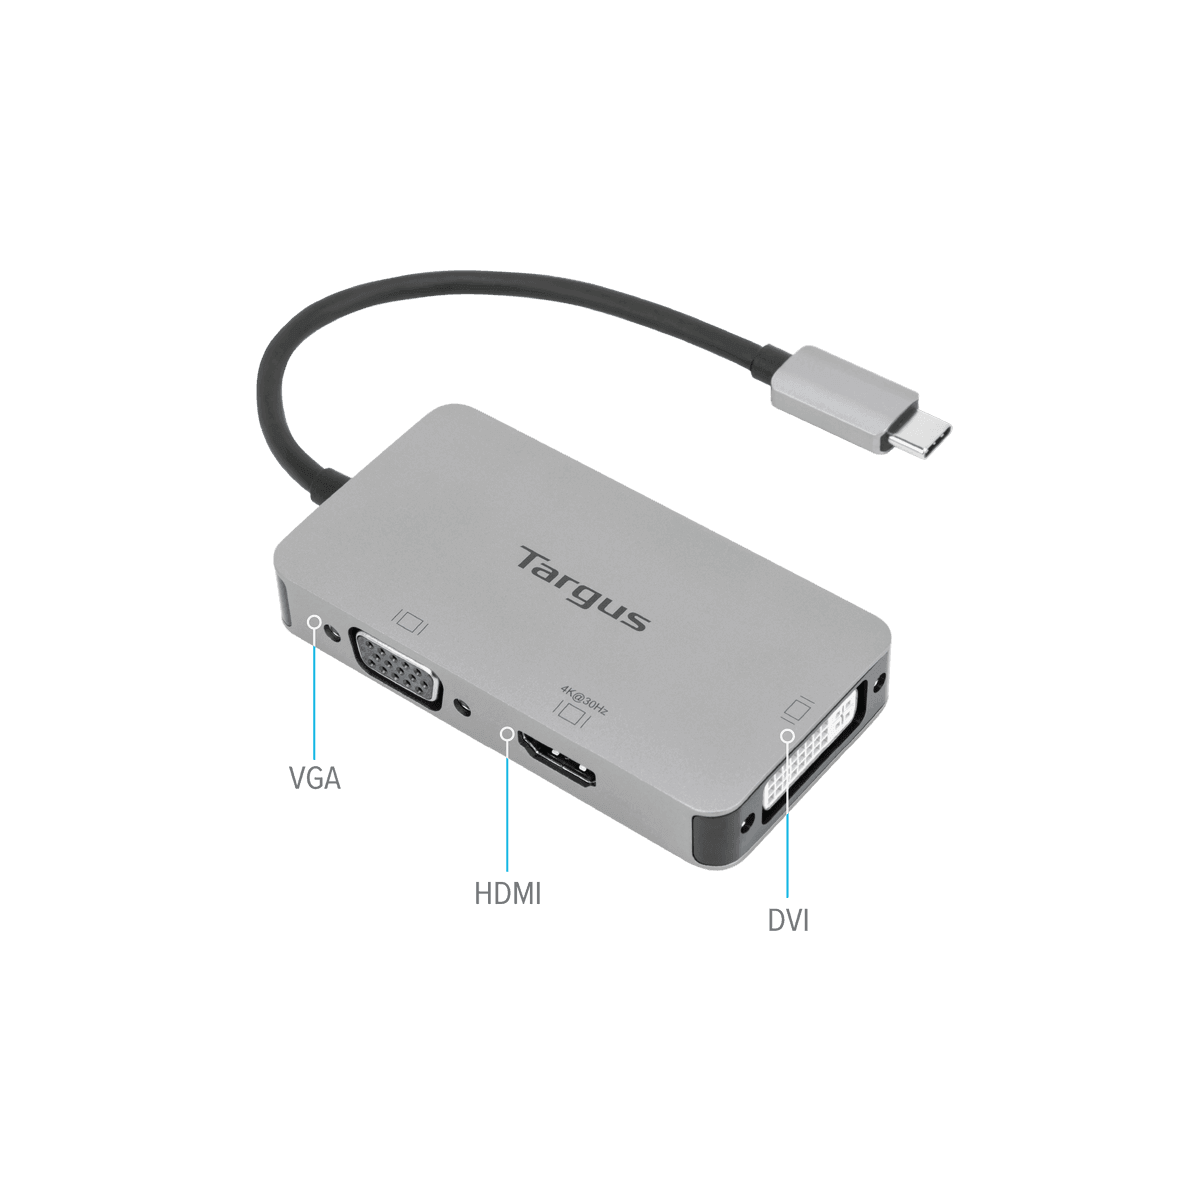 Adaptador ACHE15012 ADAPTADOR-SC-HDMI-DVI-D - La tienda de